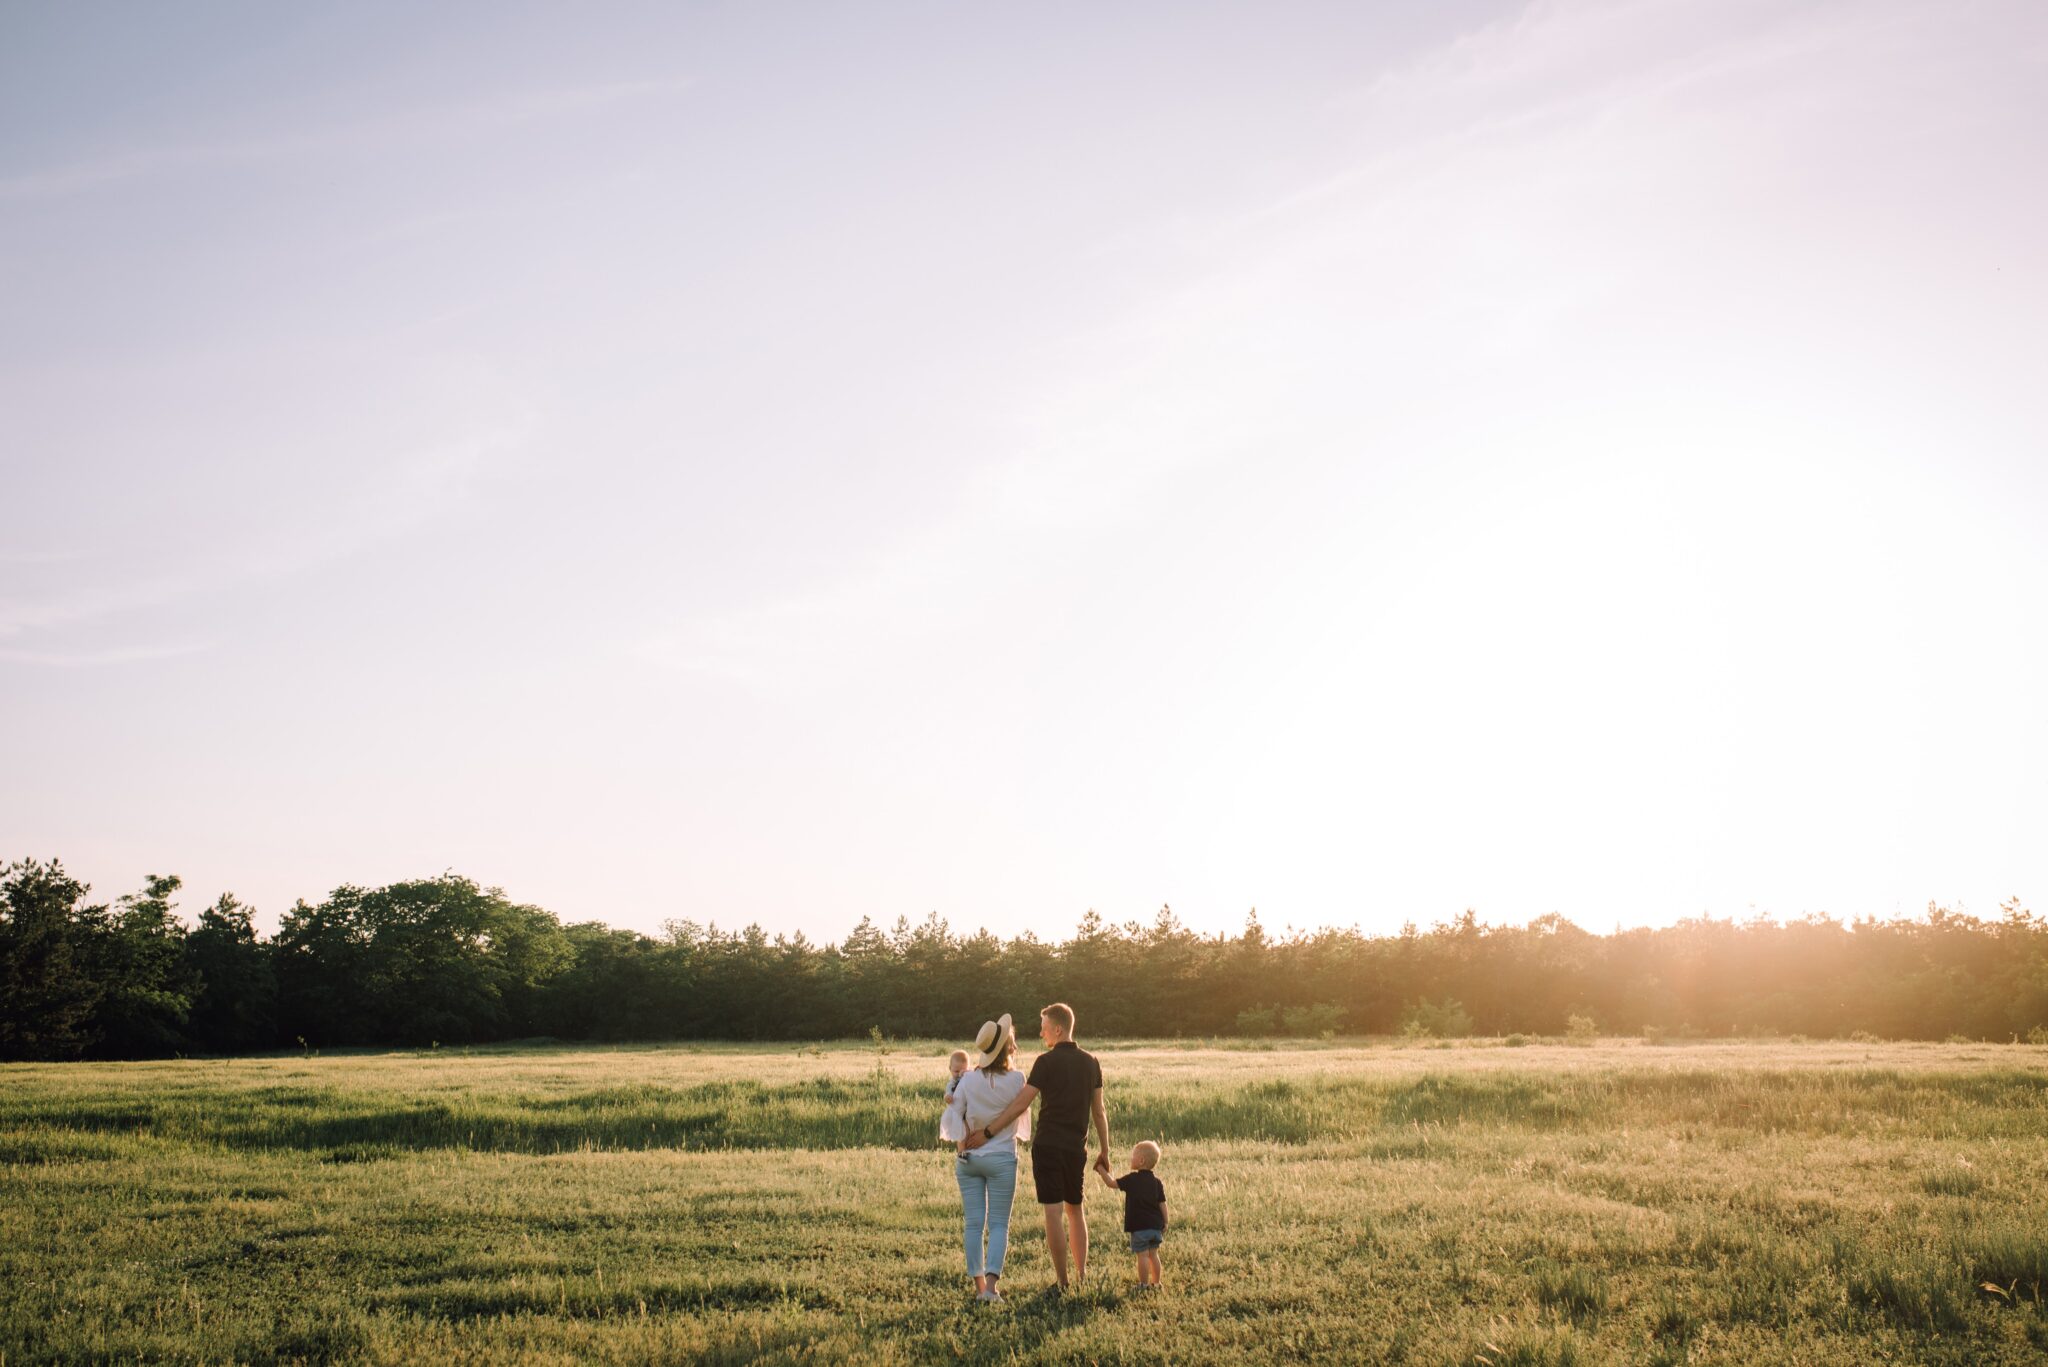 Family walking in a grass field